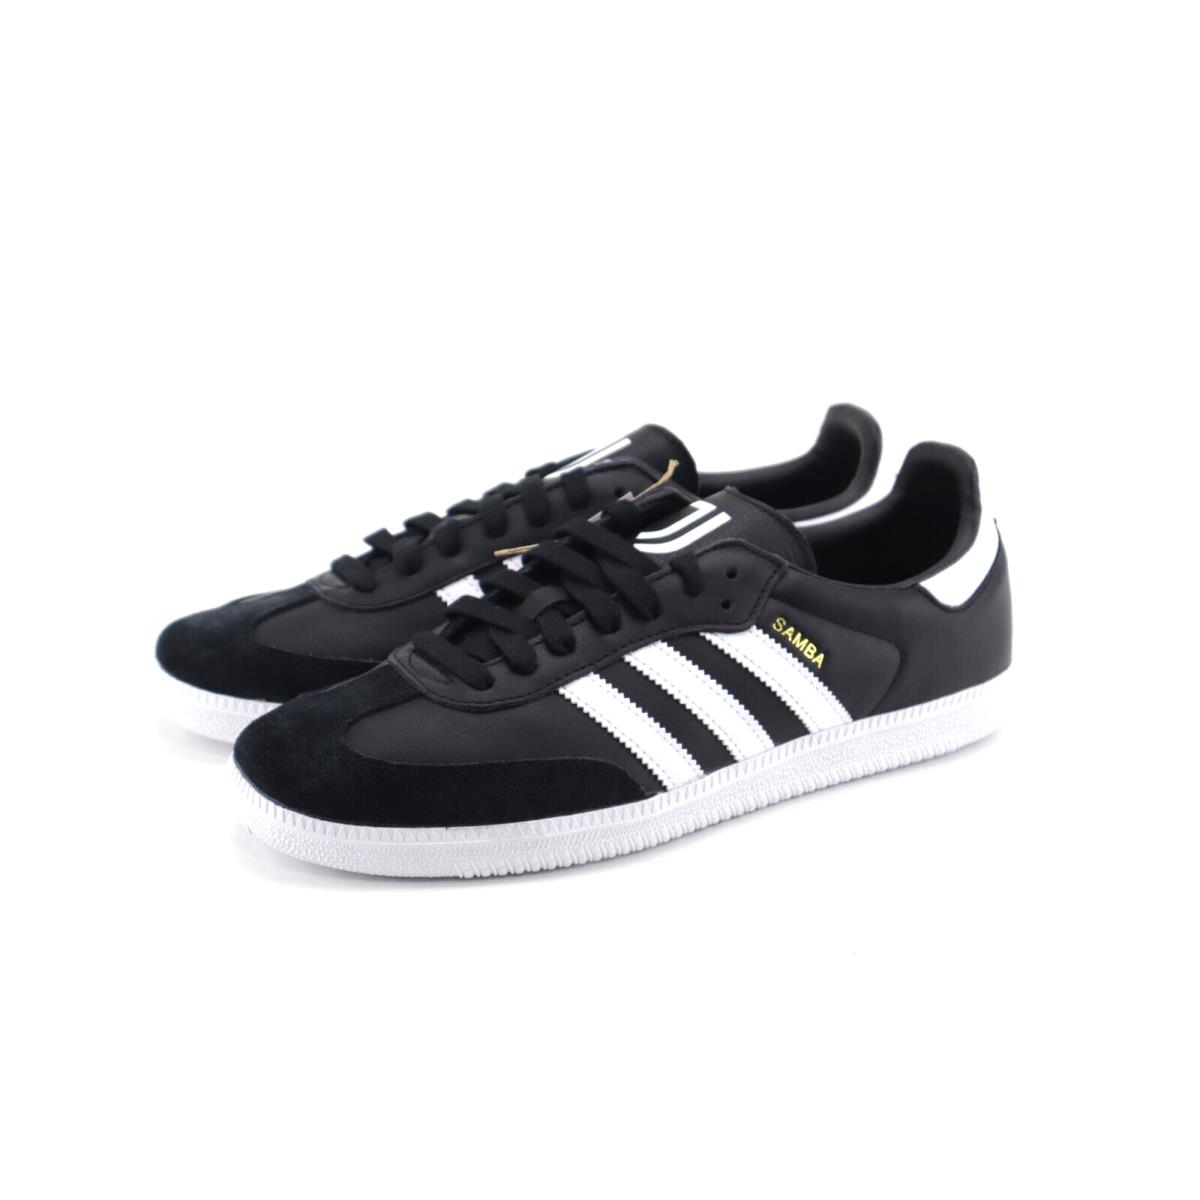 Adidas Team Samba Juventus Shoes hq7034 OG Originals Soccer Futbol